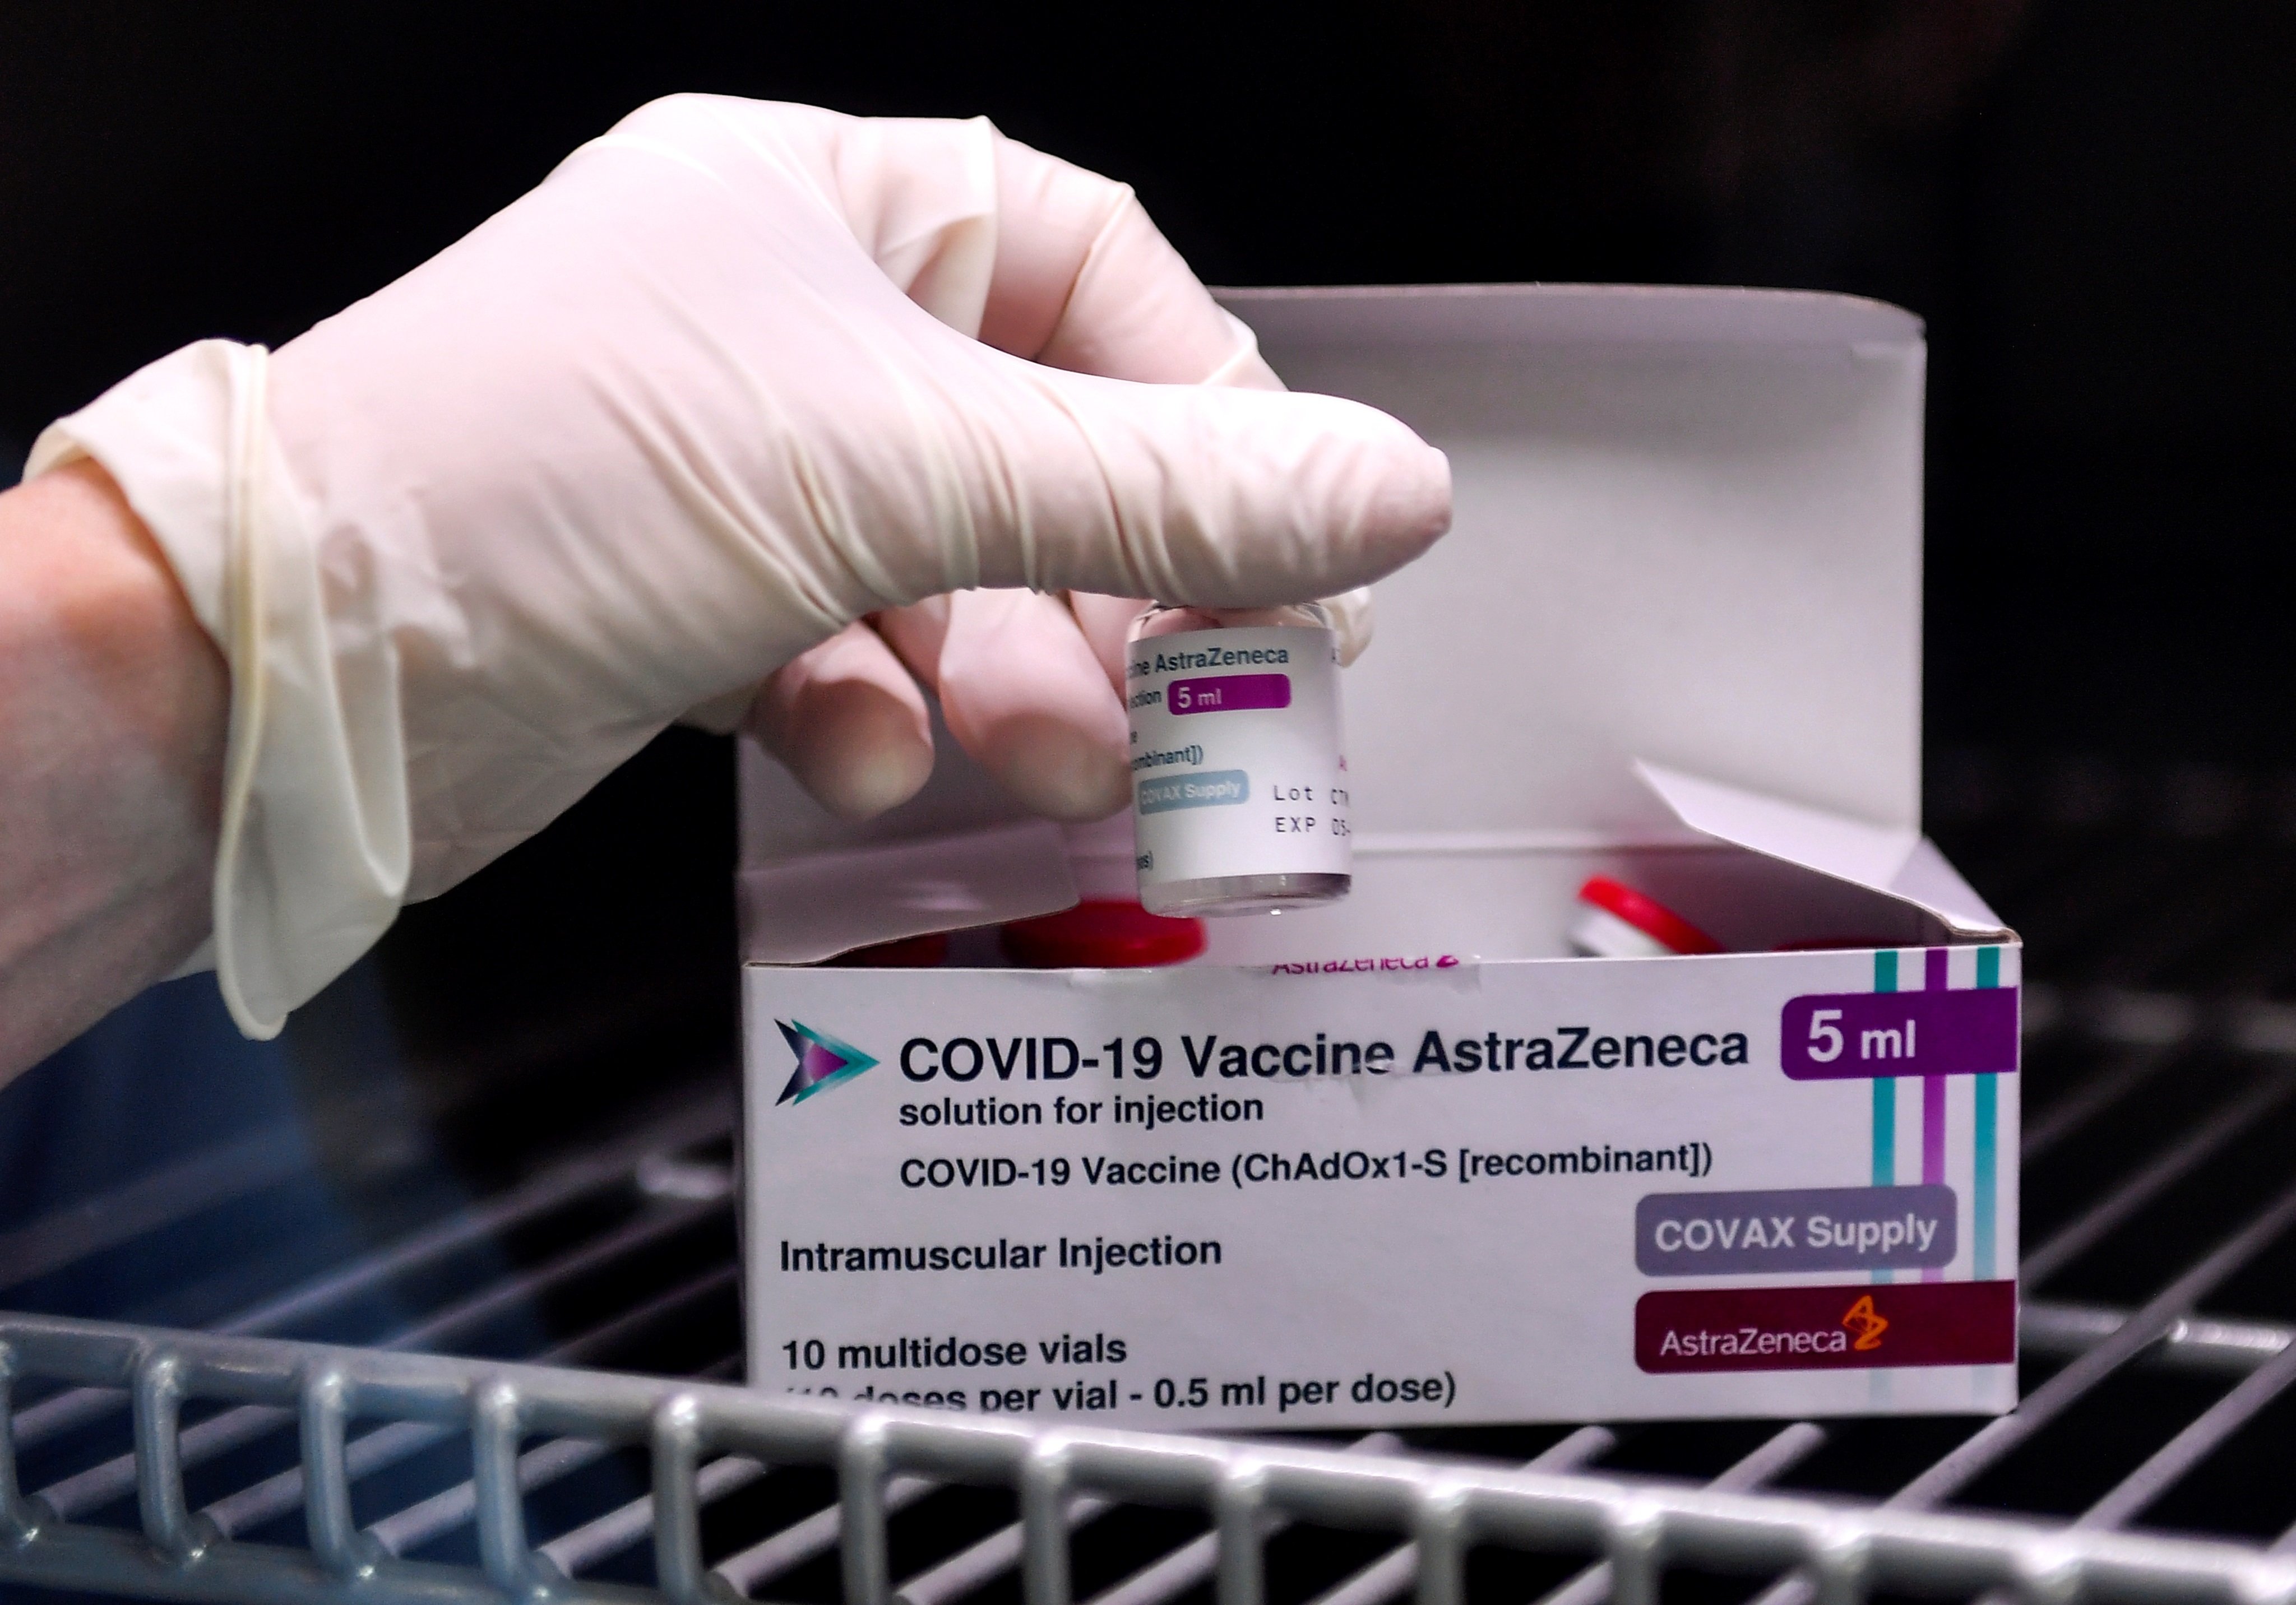 Et vacunaries amb AstraZeneca contra la Covid-19?